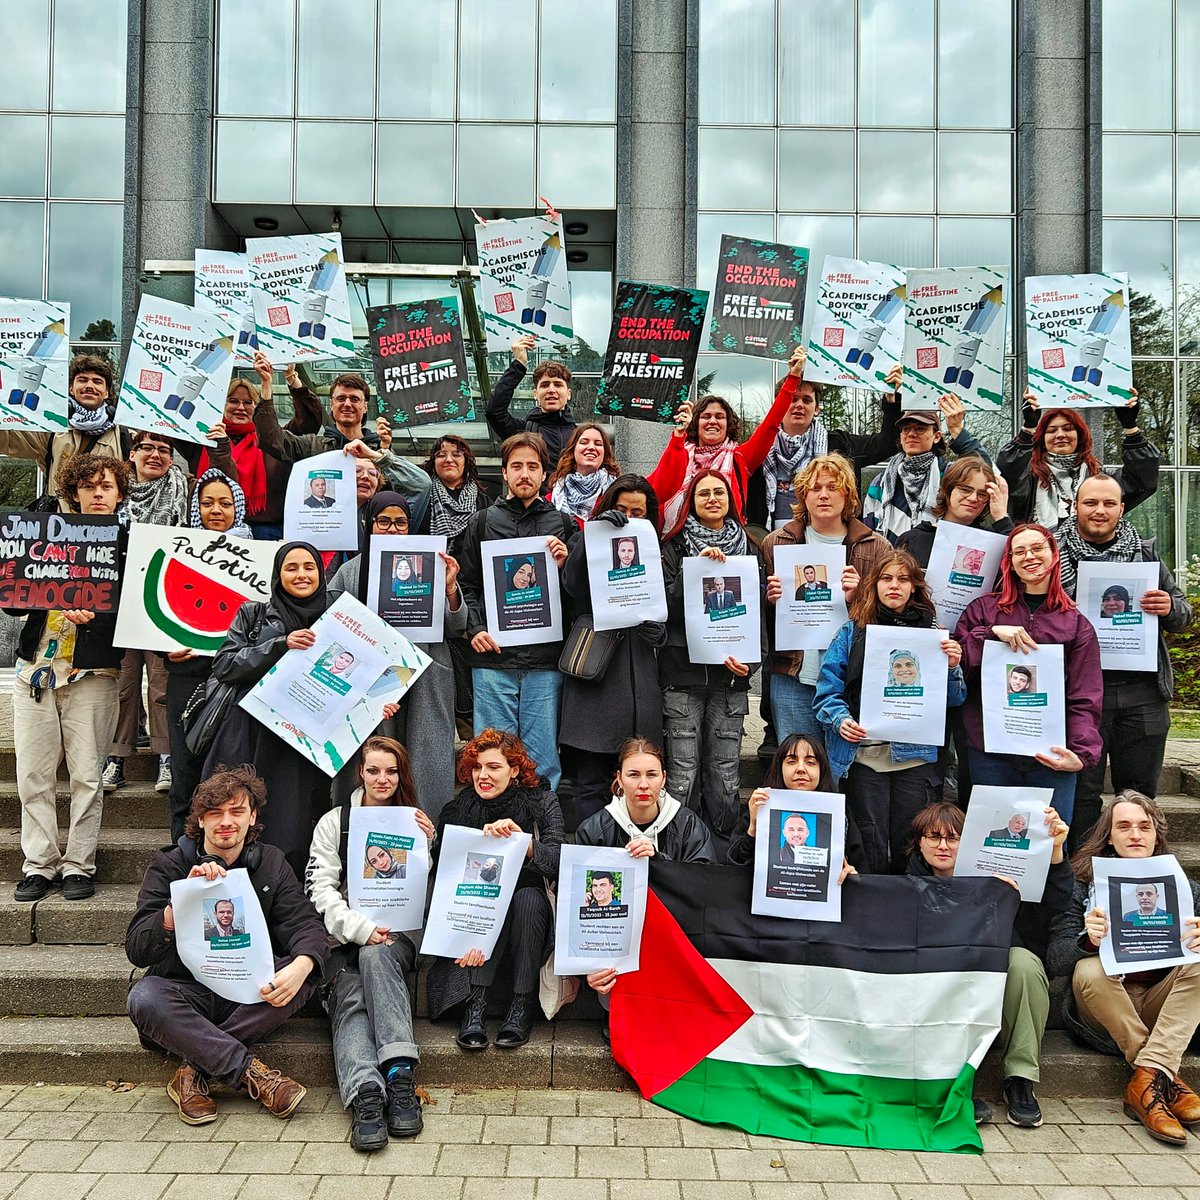 Daarnet gaven wij 7.500 handtekeningen voor een academische boycot af aan de voorzitter van de koepel van Vlaamse universiteiten! @DanckaertJan Wij zetten door tot er een boycot komt. Teken onze petitie: comac-studenten.be/freepalestine